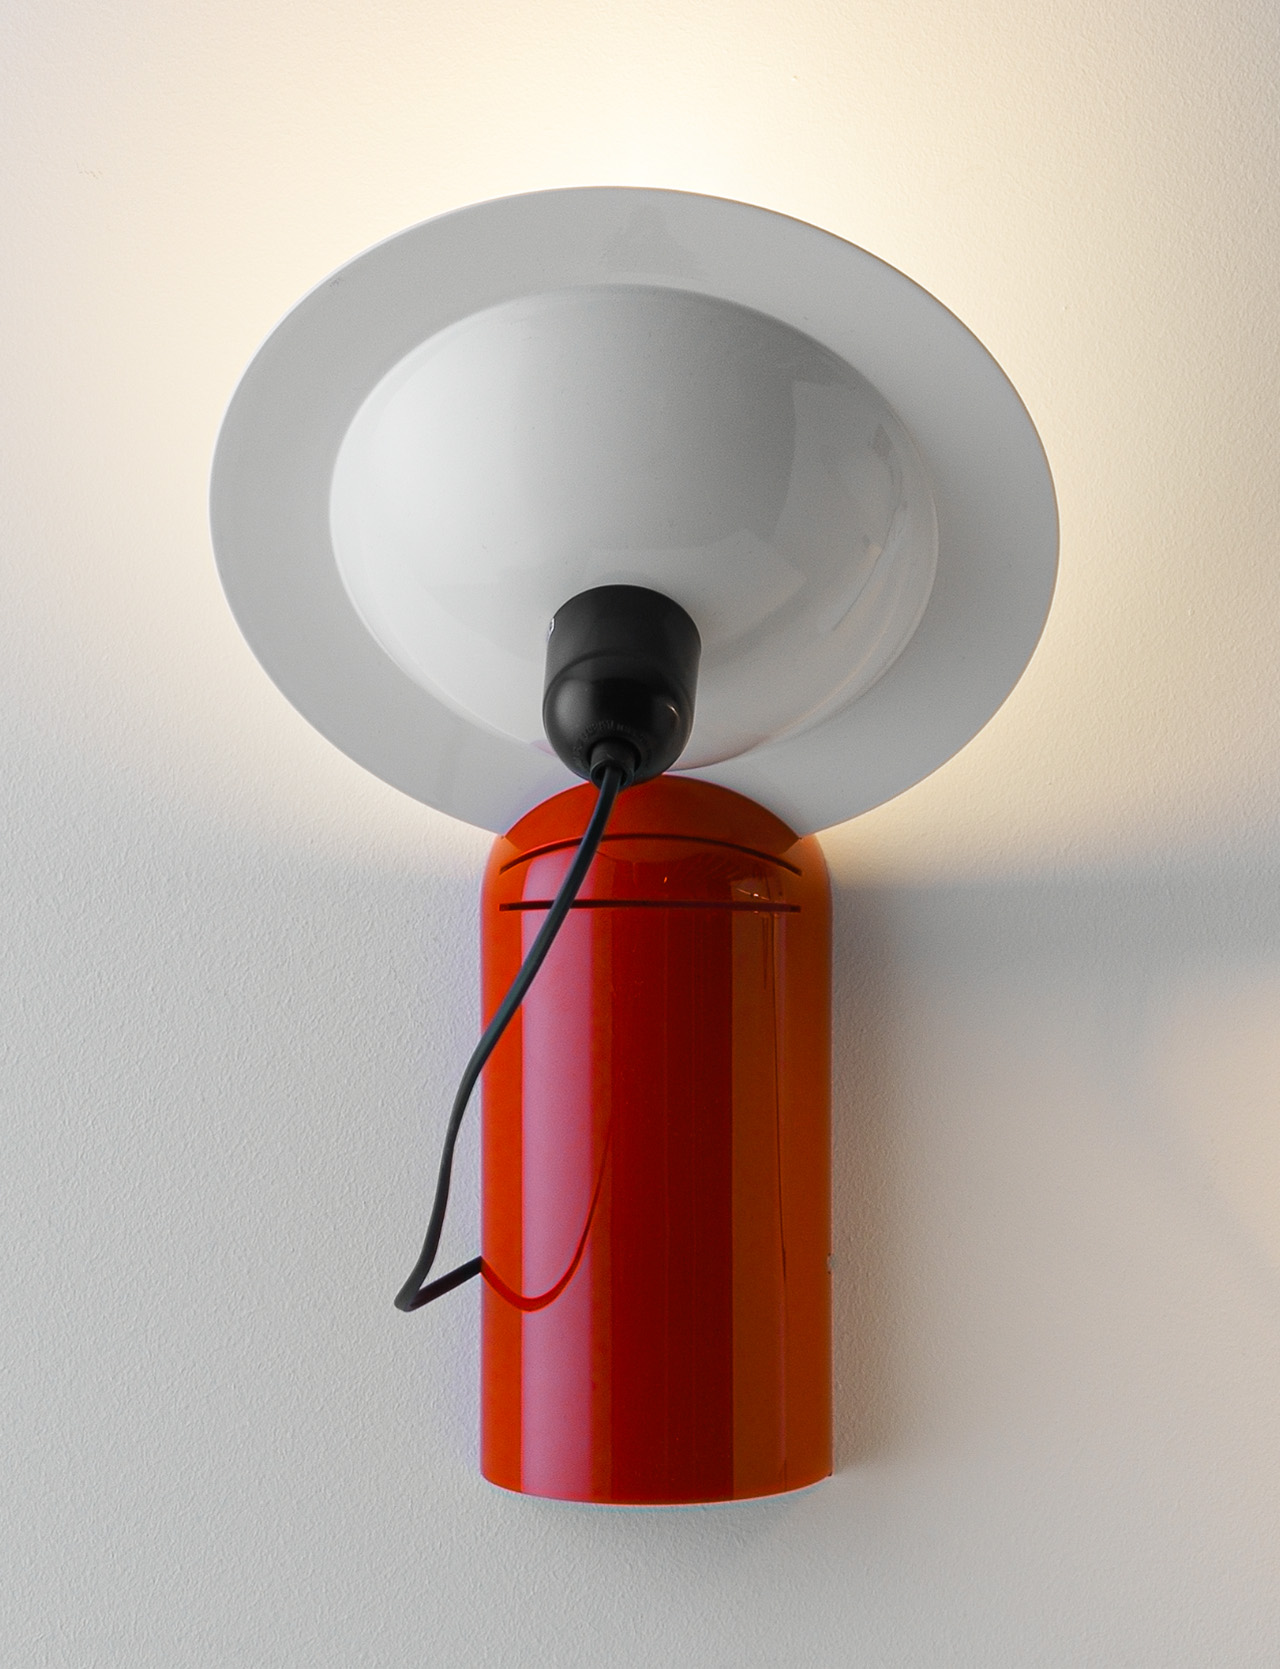 Lampiatta-Lamp for Wall